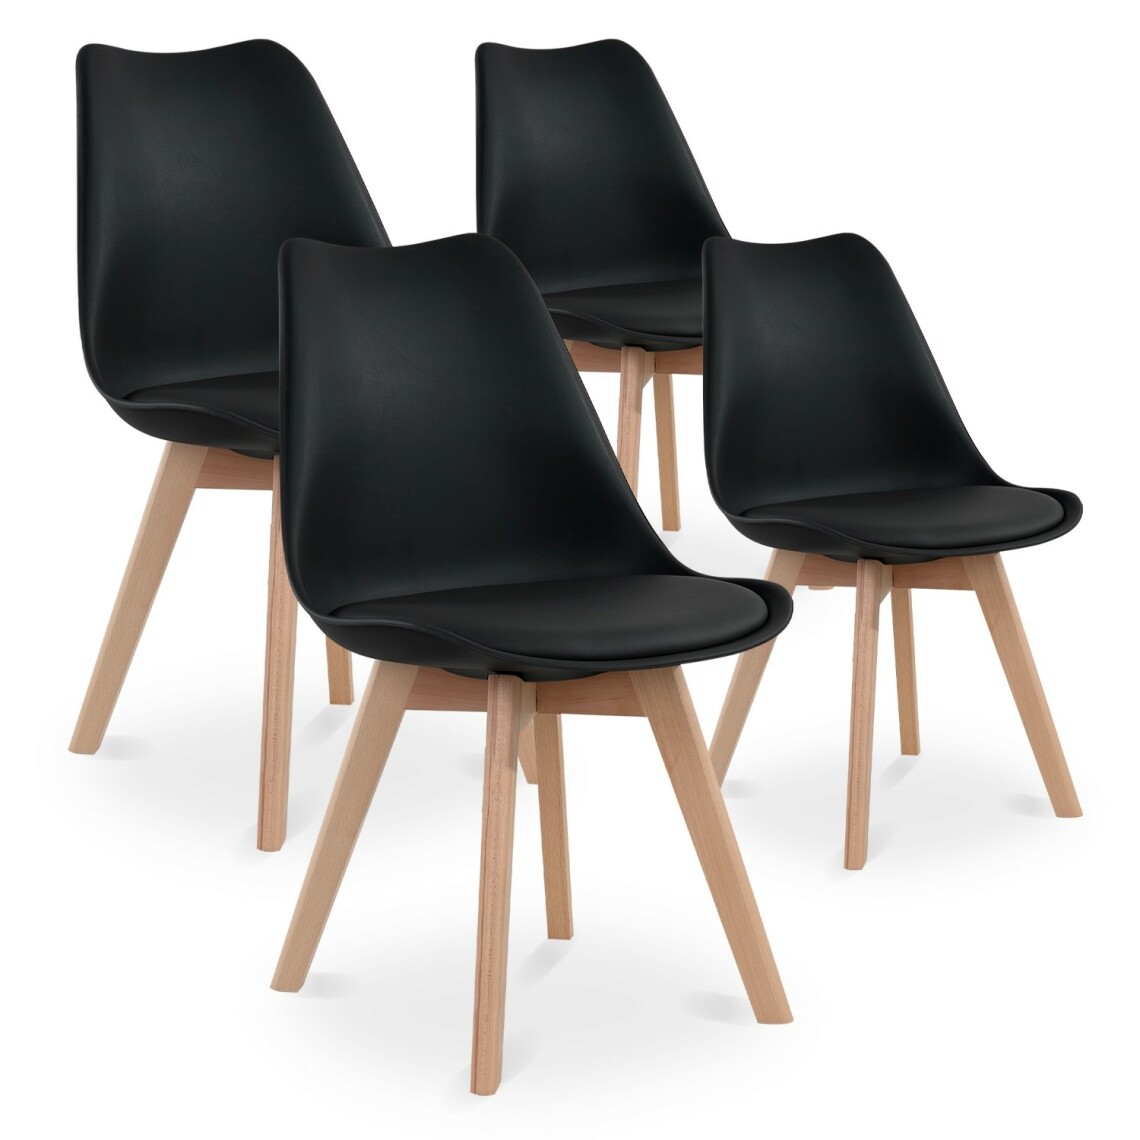 marque generique - Lot de 4 chaises style scandinave Catherina Noir - Chaises